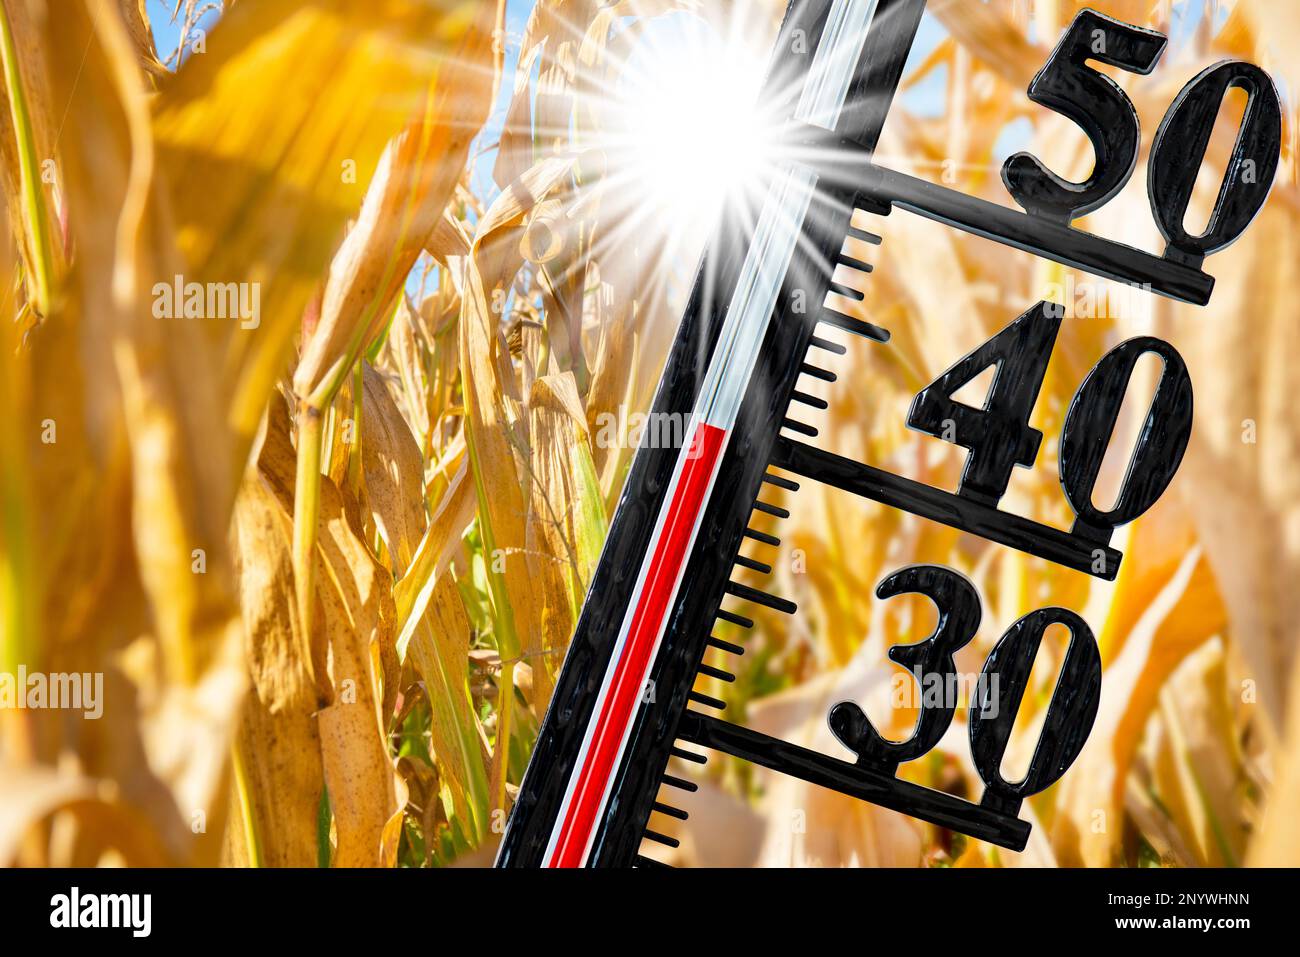 Hohe Temperatur zeigt den Klimawandel auf dem Thermometer an Stockfoto